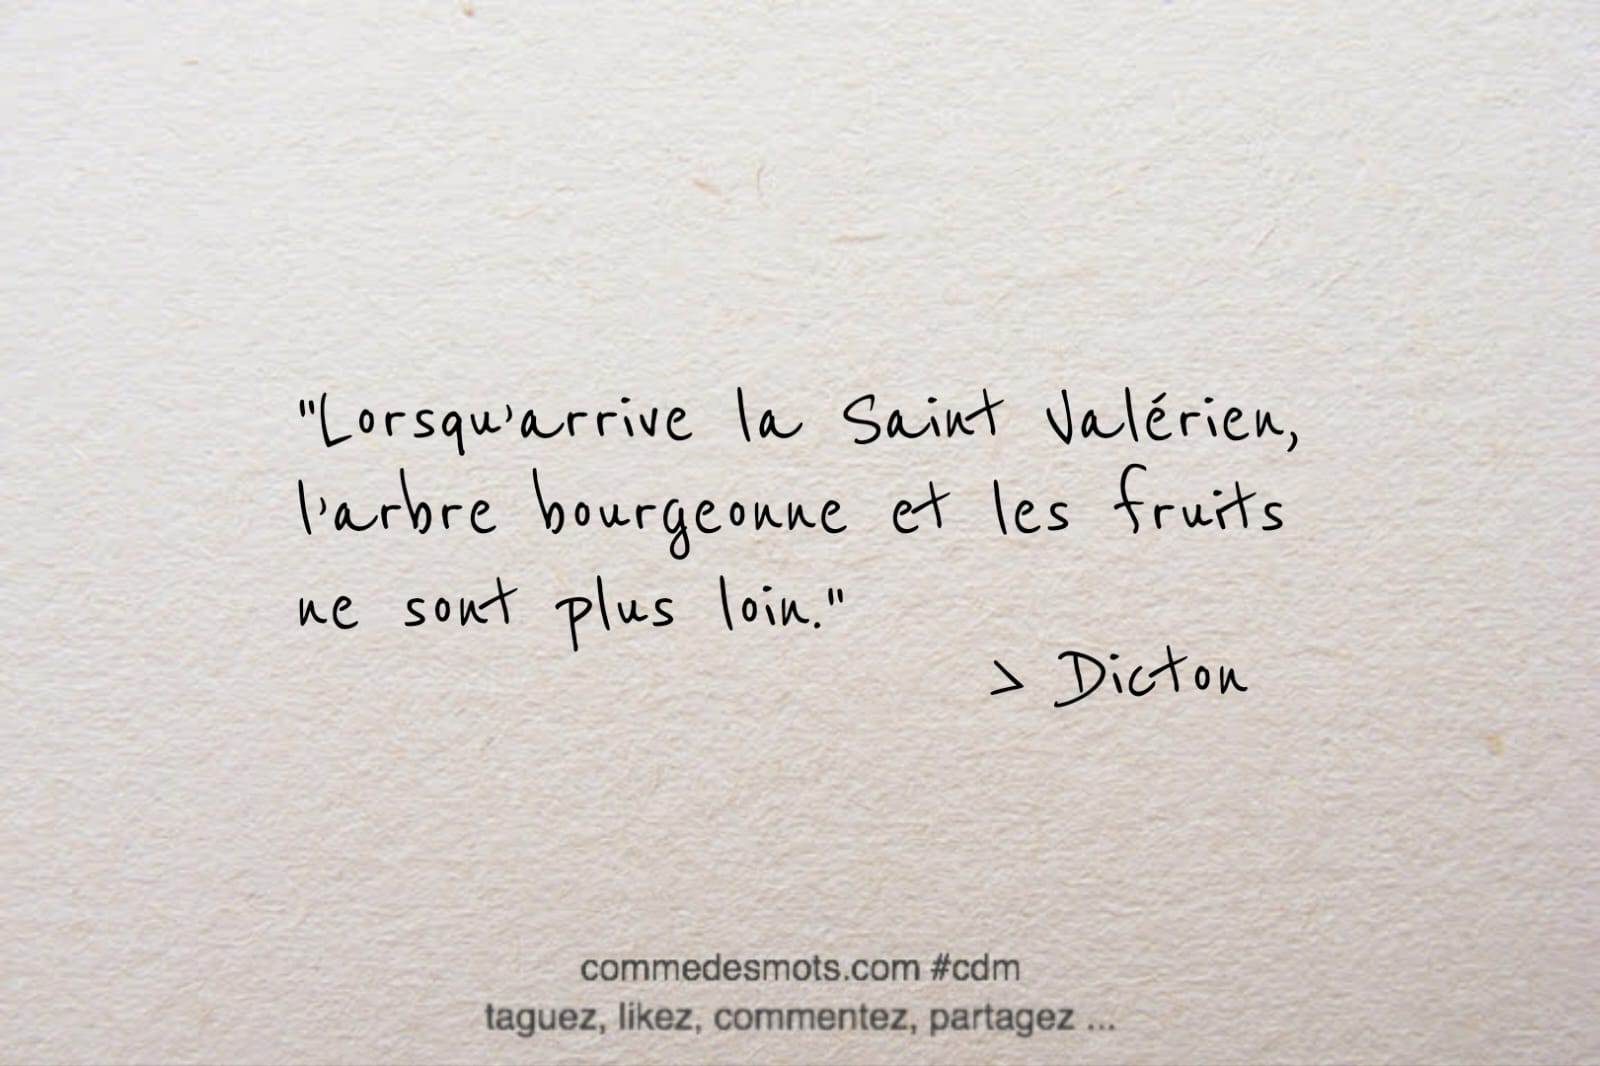 dicton du 14 avril jour de la Saint Valérien : "Lorsqu’arrive la Saint Valérien, l’arbre bourgeonne et les fruits ne sont plus loin."